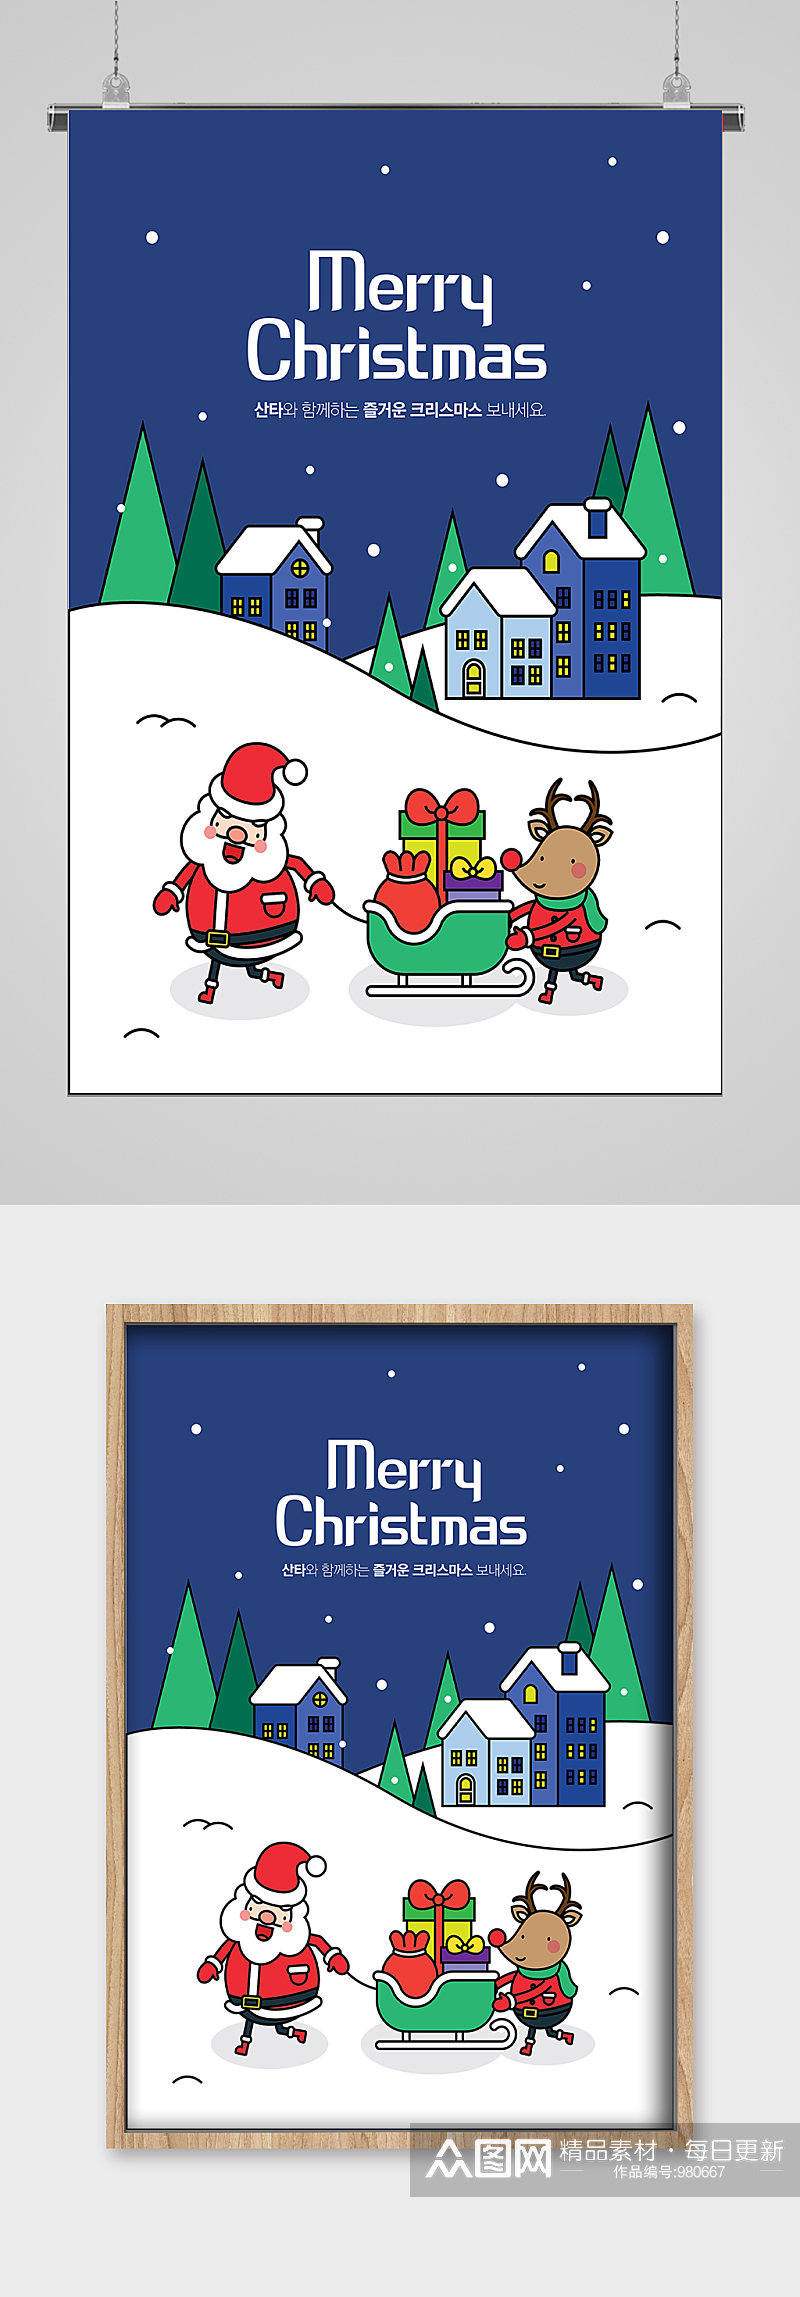 圣诞雪地美景线描插画宣传素材